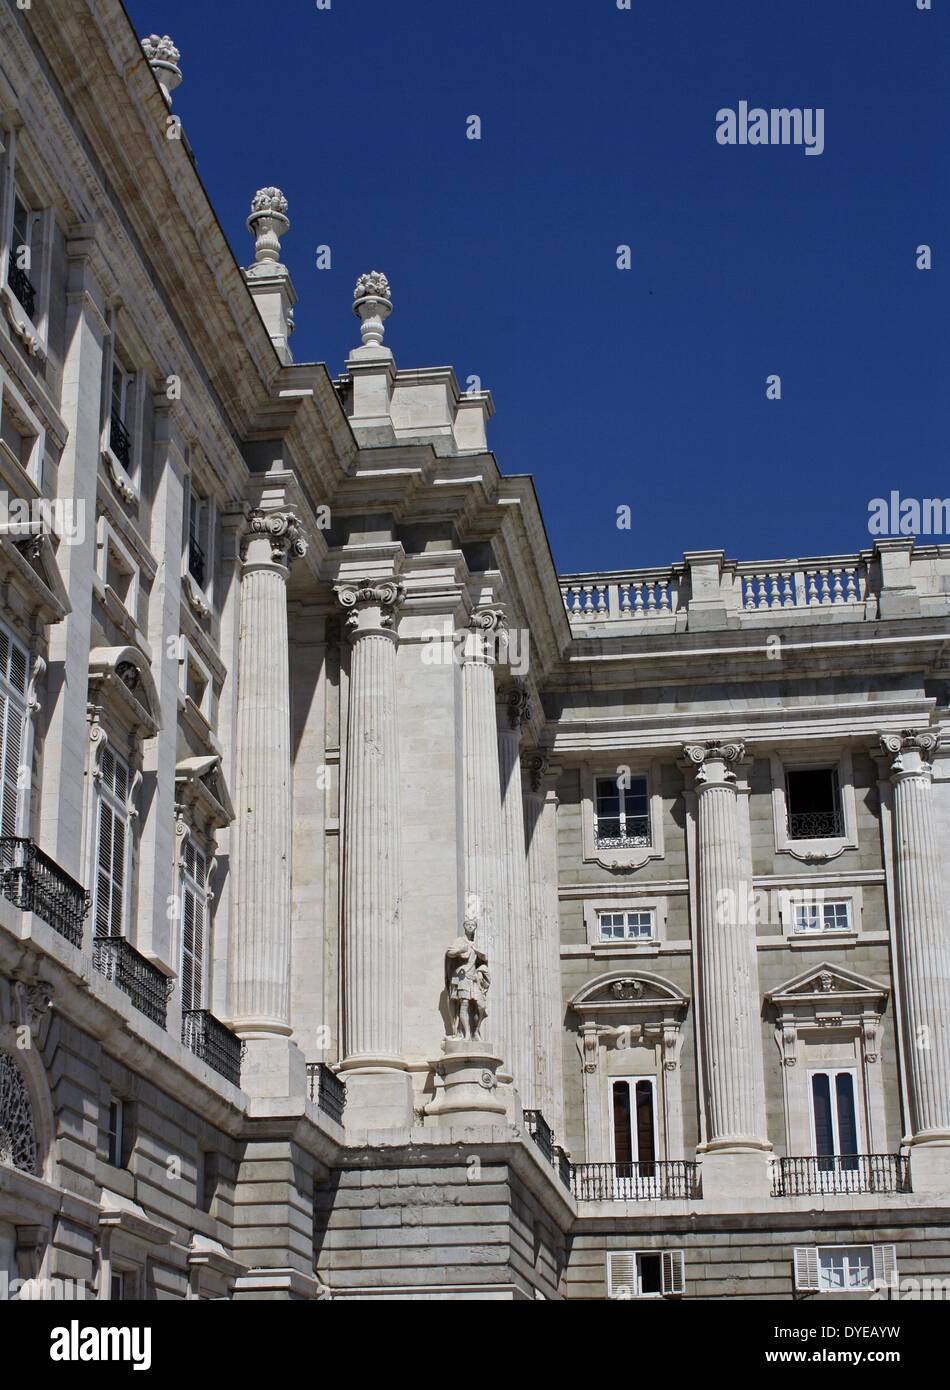 Blick auf den Königlichen Palast von Madrid. Die offizielle Residenz der spanischen Königsfamilie, obwohl es nur für staatliche Zeremonien verwendet wird. In einem barocken und klassizistischen Stil vom Architekten Filippo Juvarra 1738 gebaut. Madrid. Spanien 2013 Stockfoto